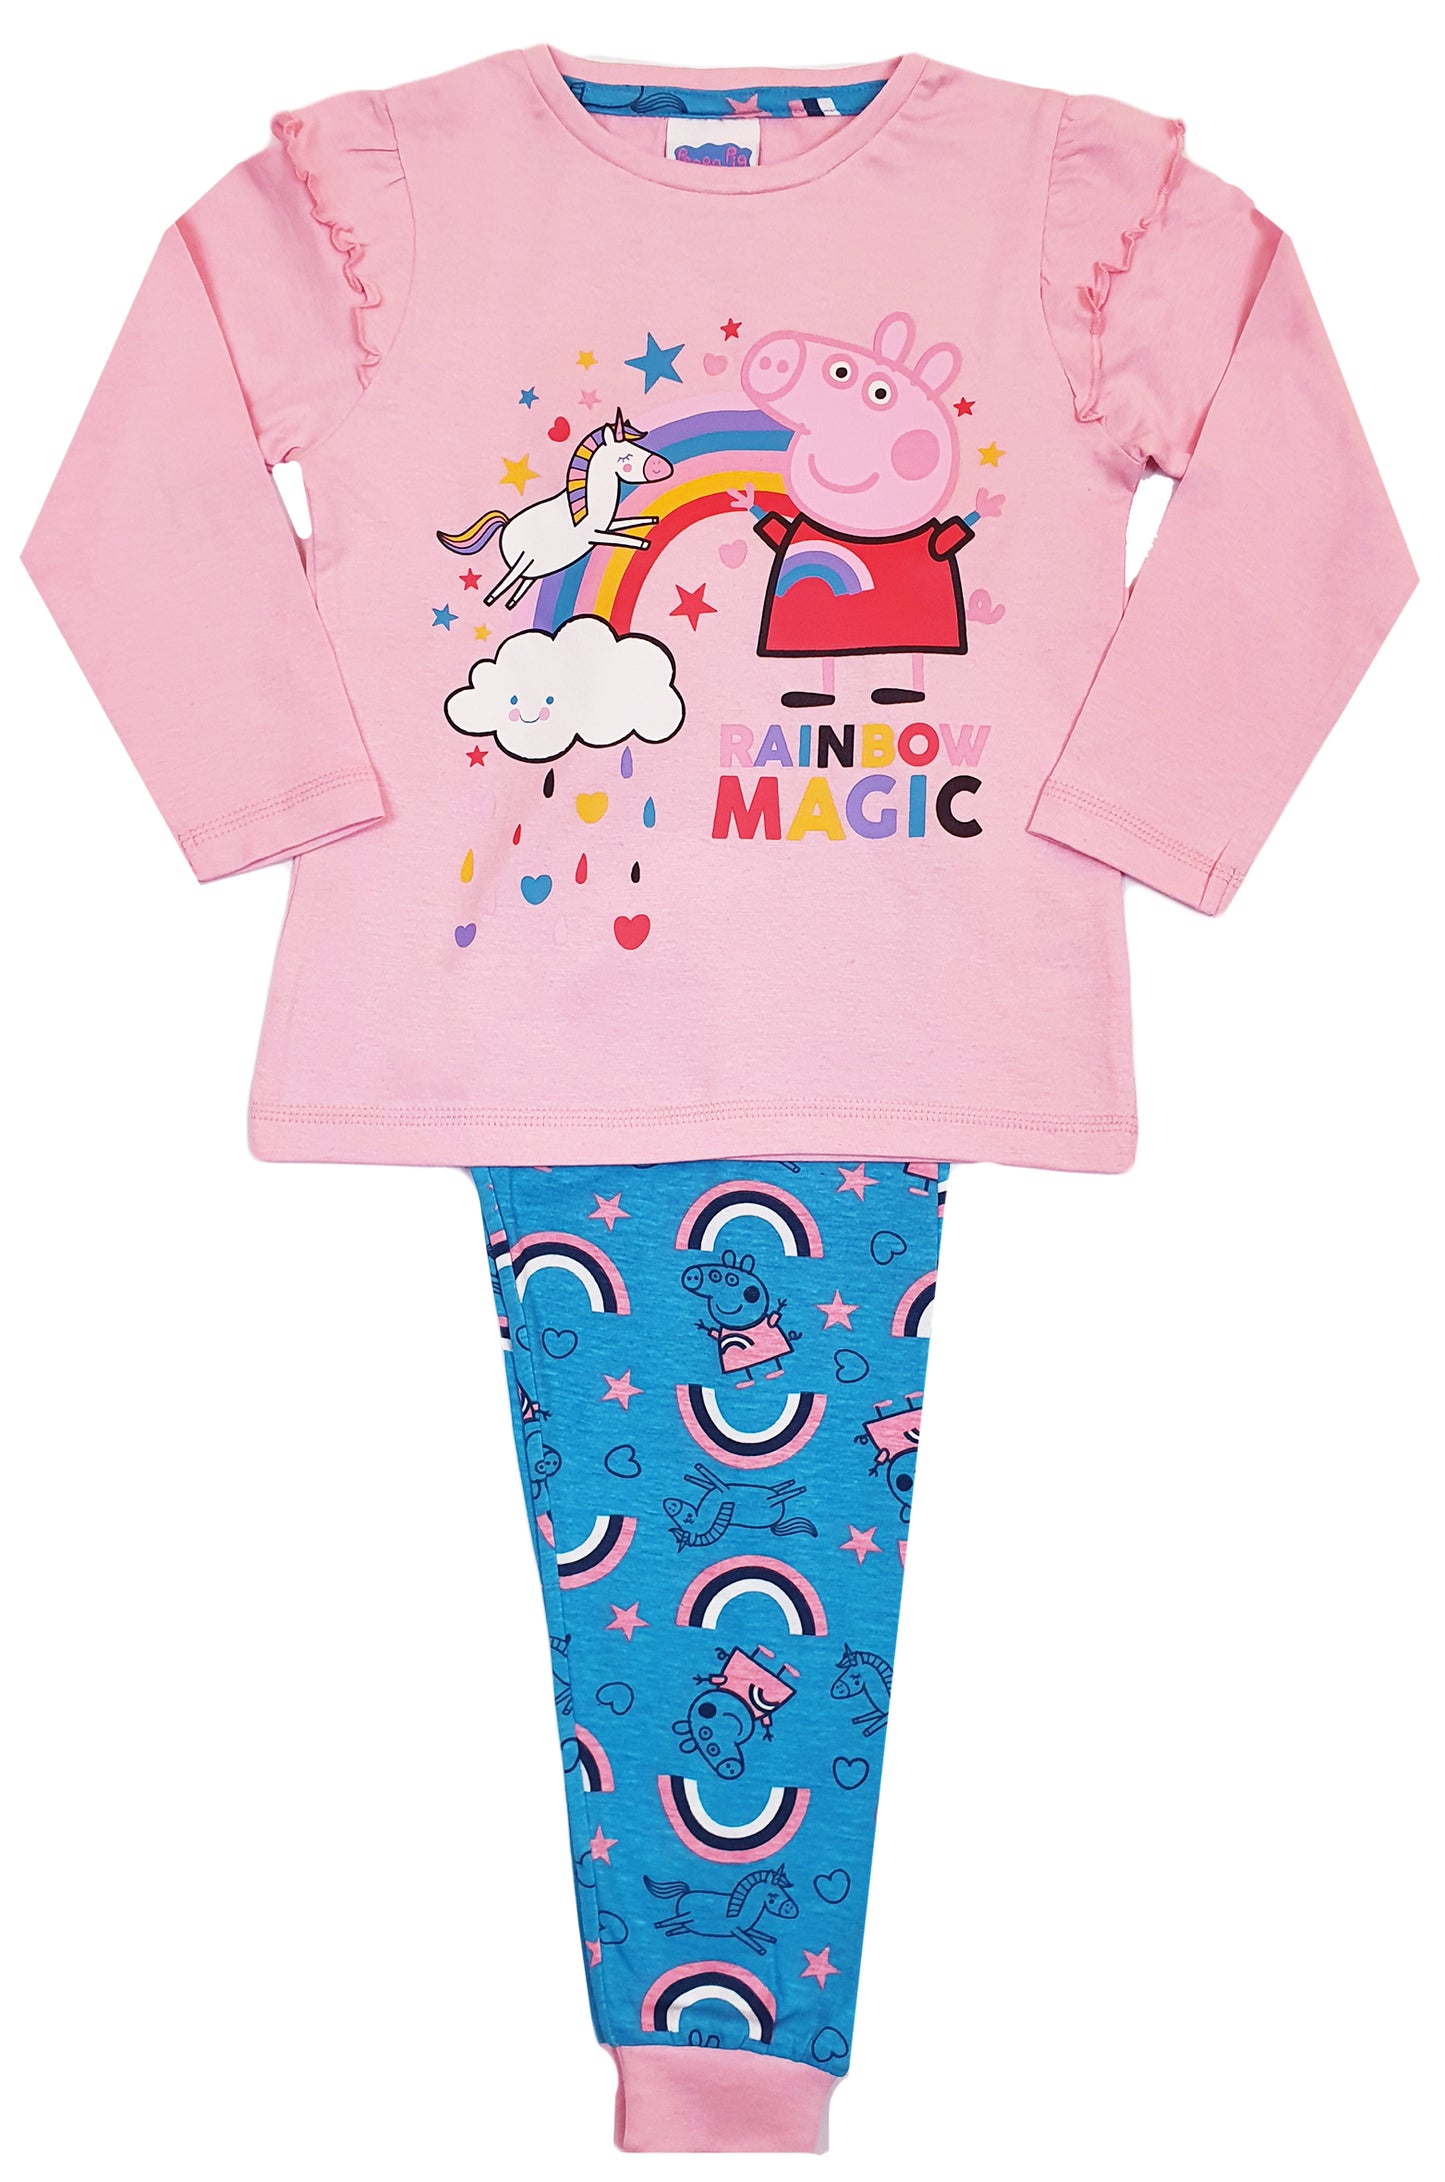 Girls Peppa Pig Pyjamas - Rainbow